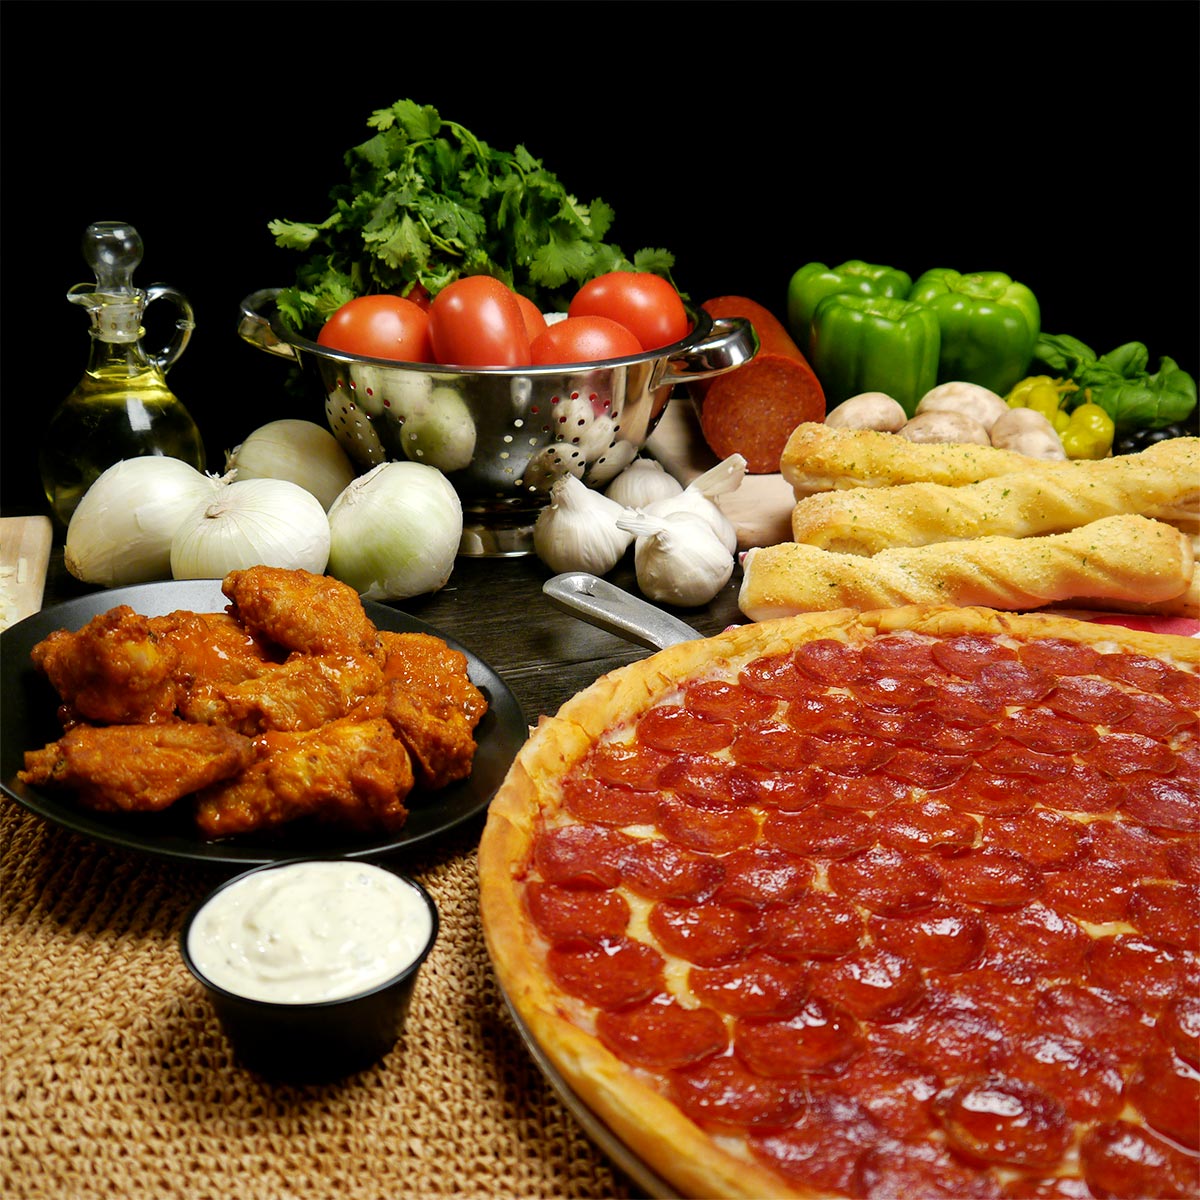 Valentino's Award-winning pizza, pasta, salad, breadsticks